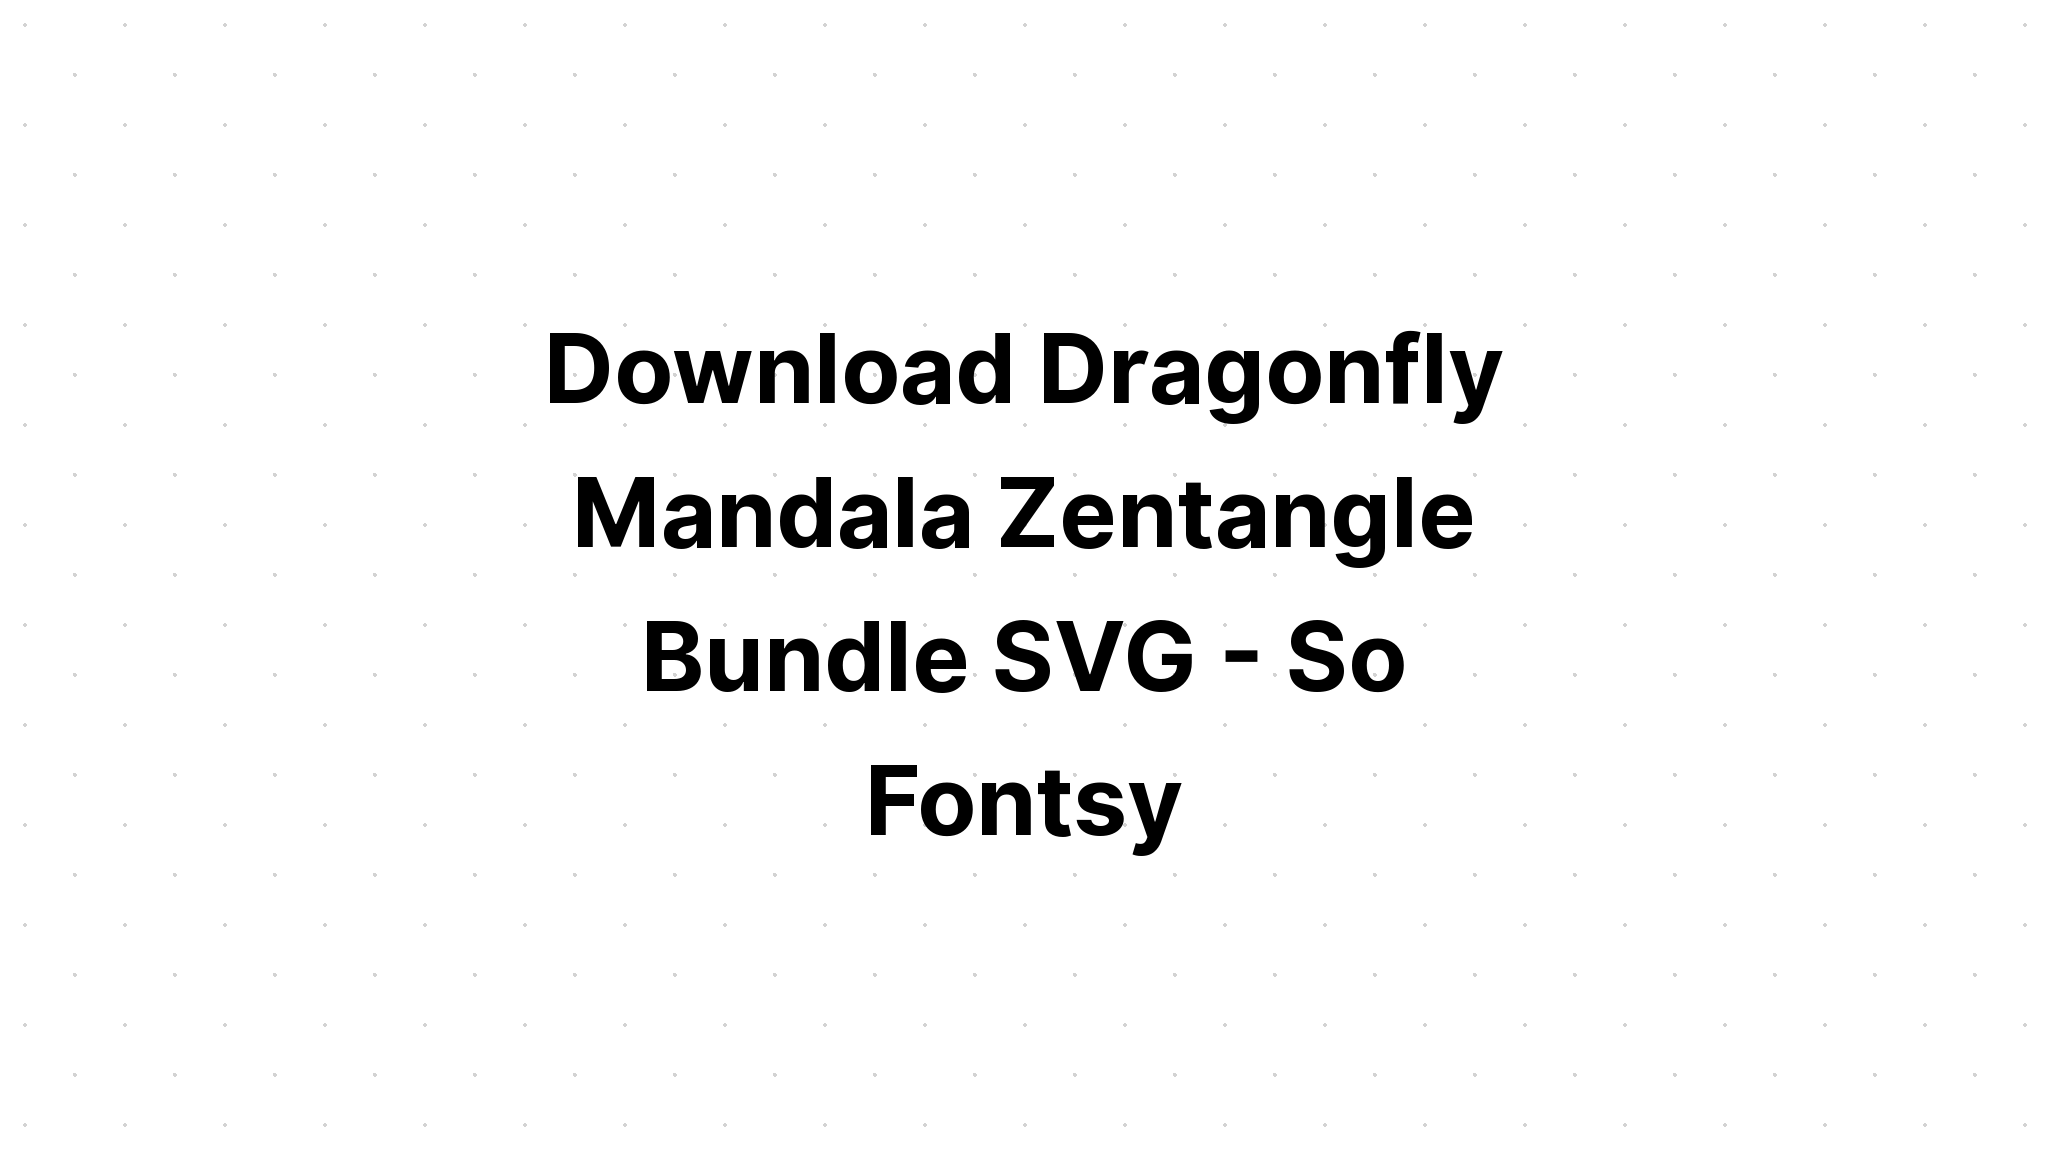 Download Zentangle Dragonfly Monogram SVG File